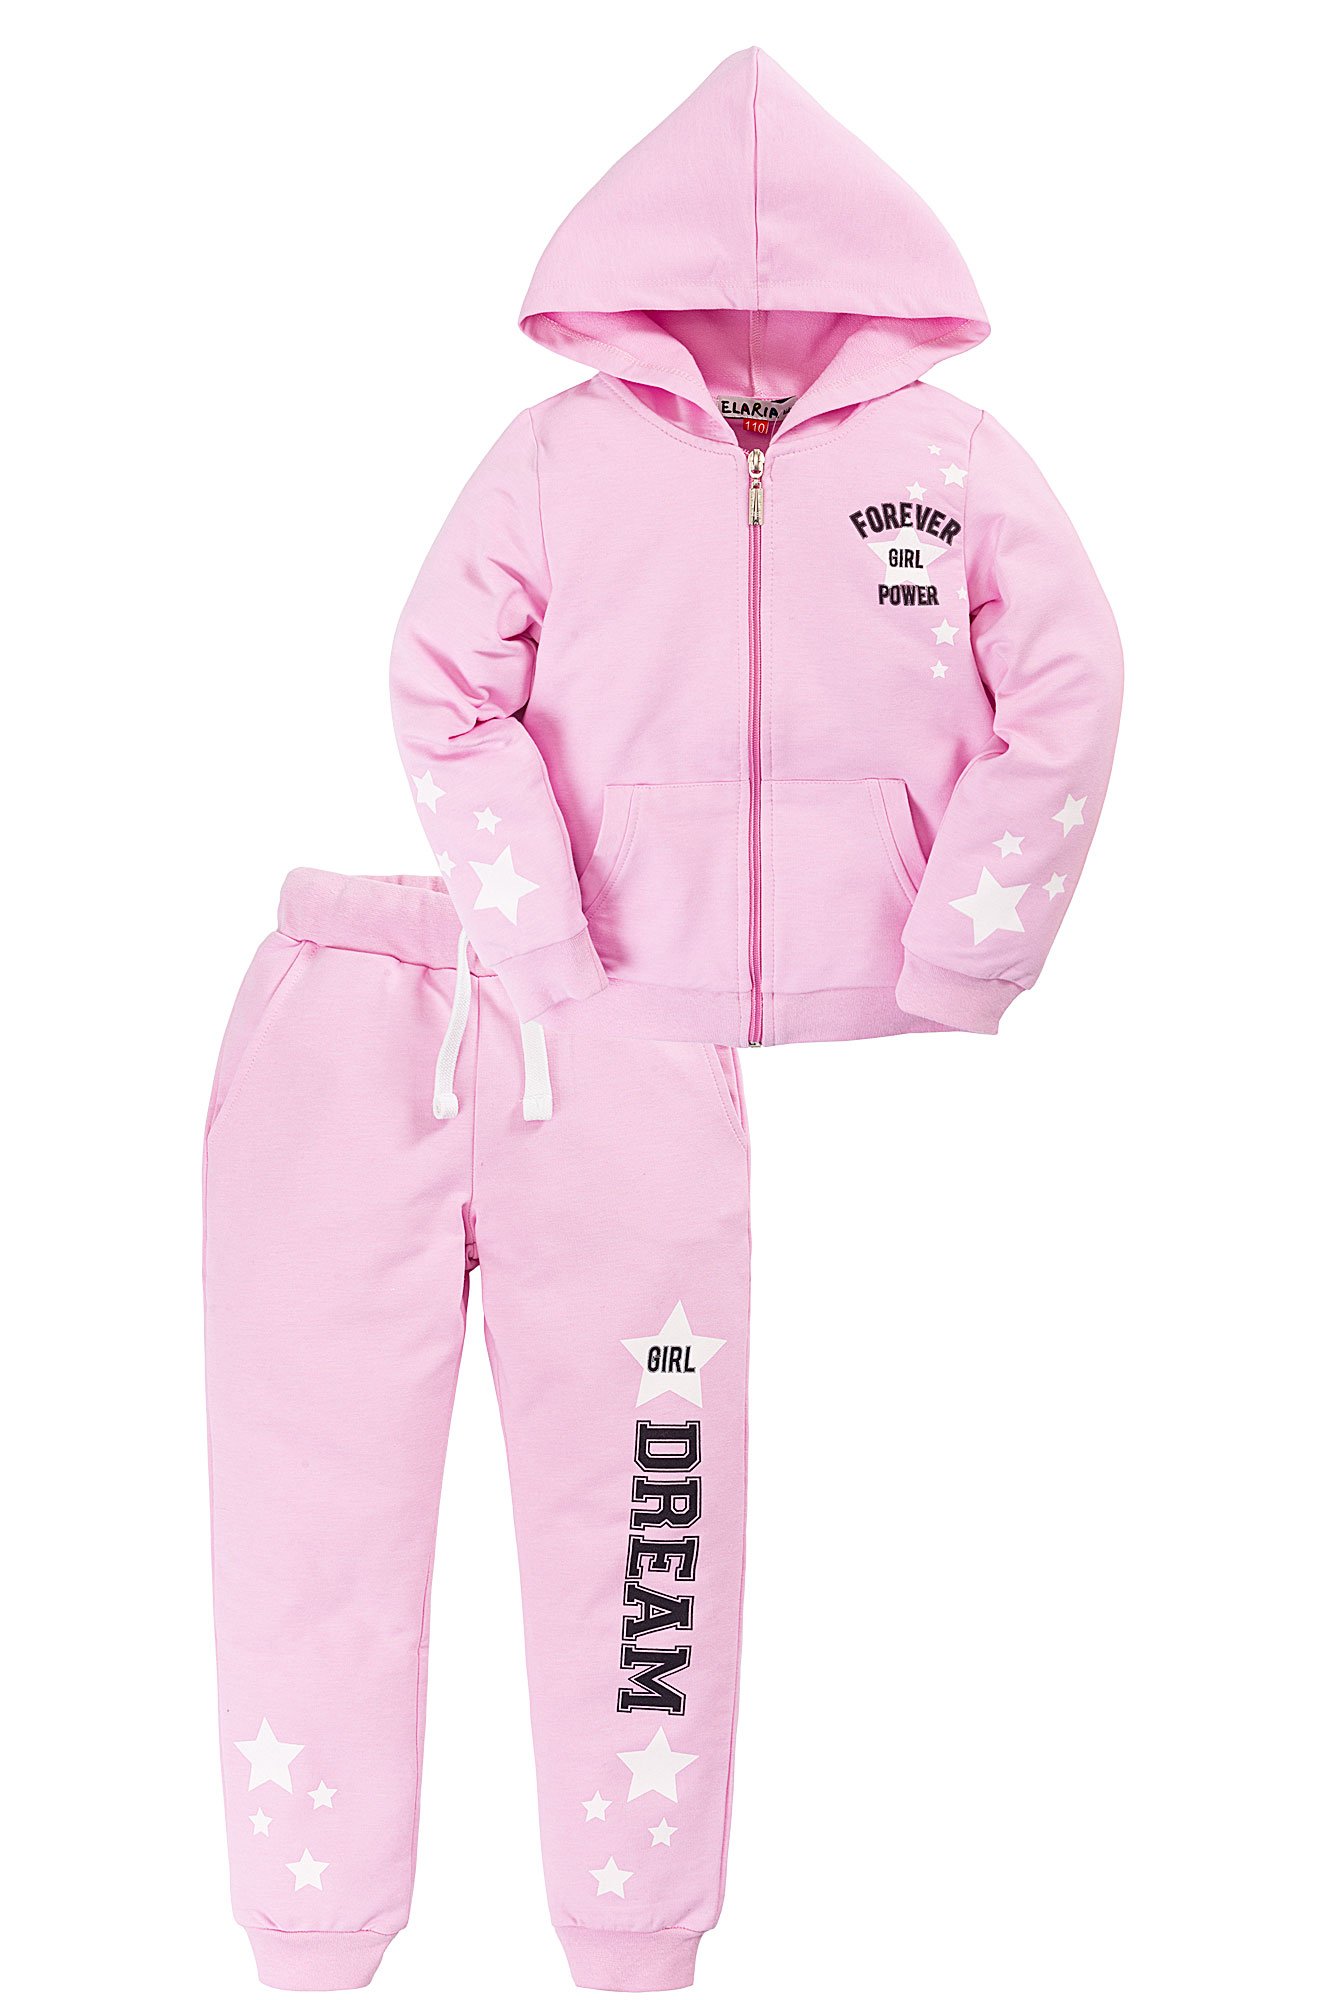 Optrf ru оптовый интернет магазин одежды. Elaria детская одежда. 617-24в-2 комплект для девочки "рада" розовый р.128-64 --. Optrf.ru. Комплект 2 предмета Elaria.